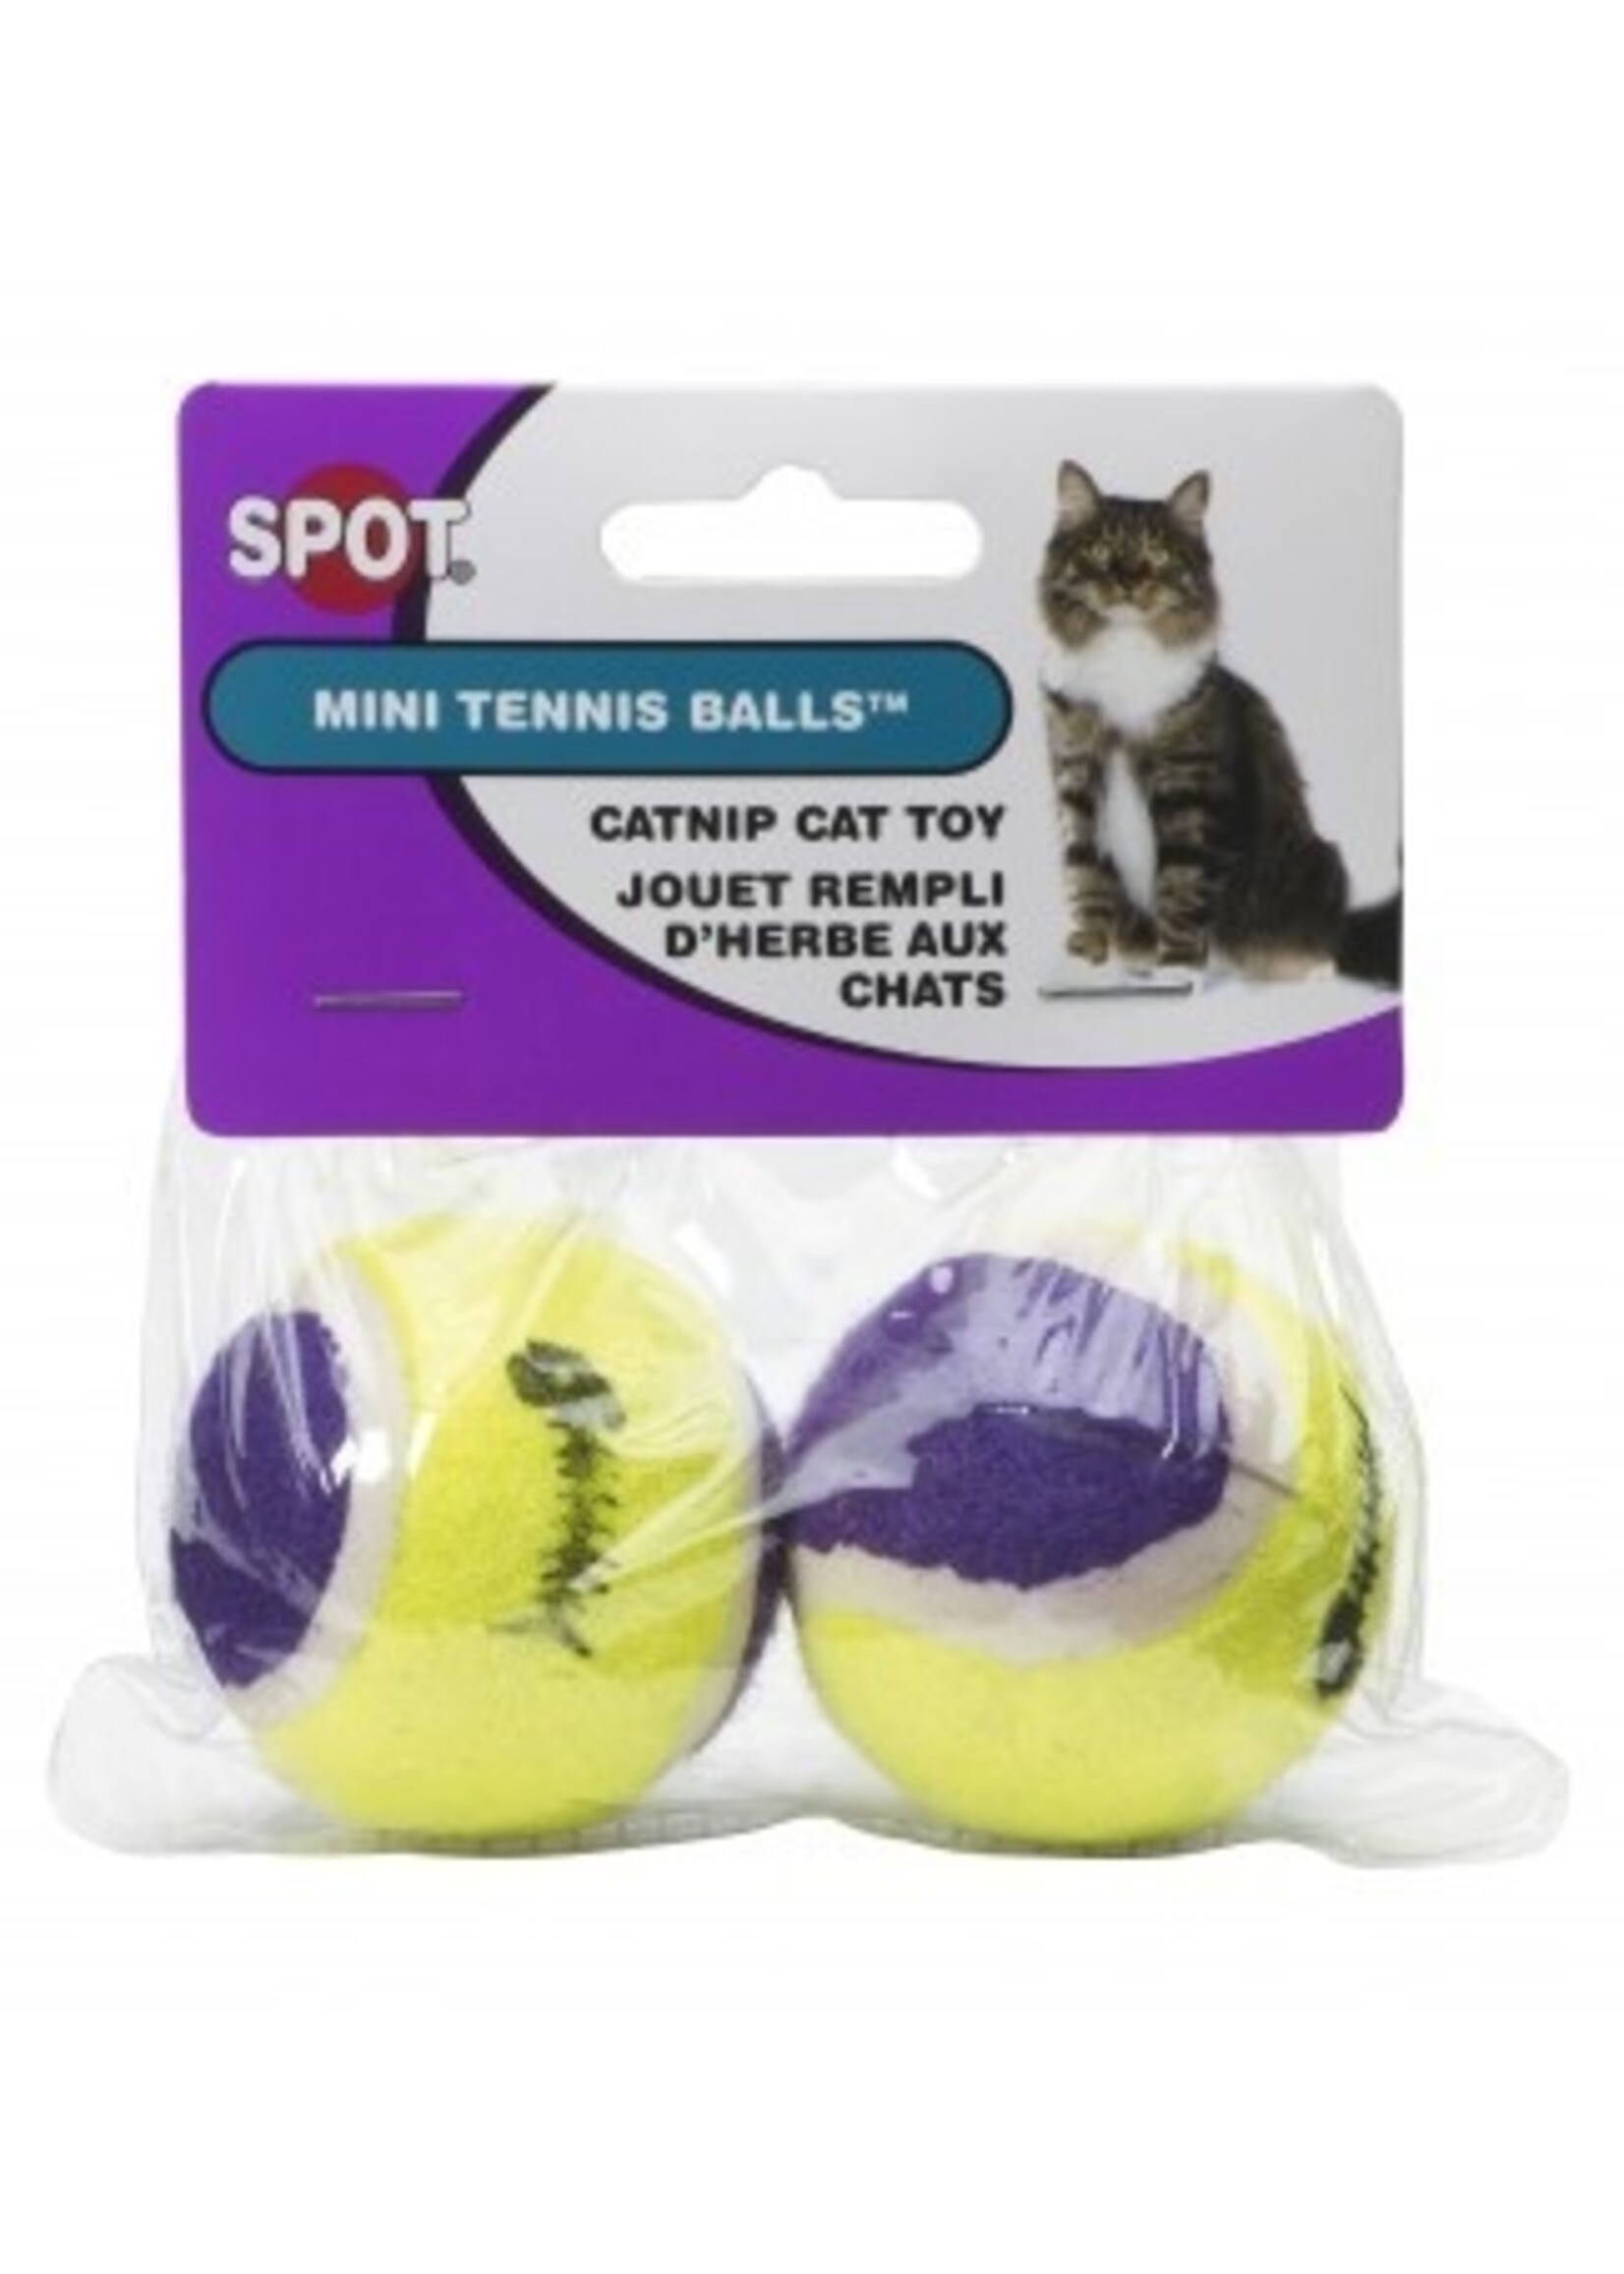 Spot Spot 2 Pack Mini Tennis Balls with Catnip